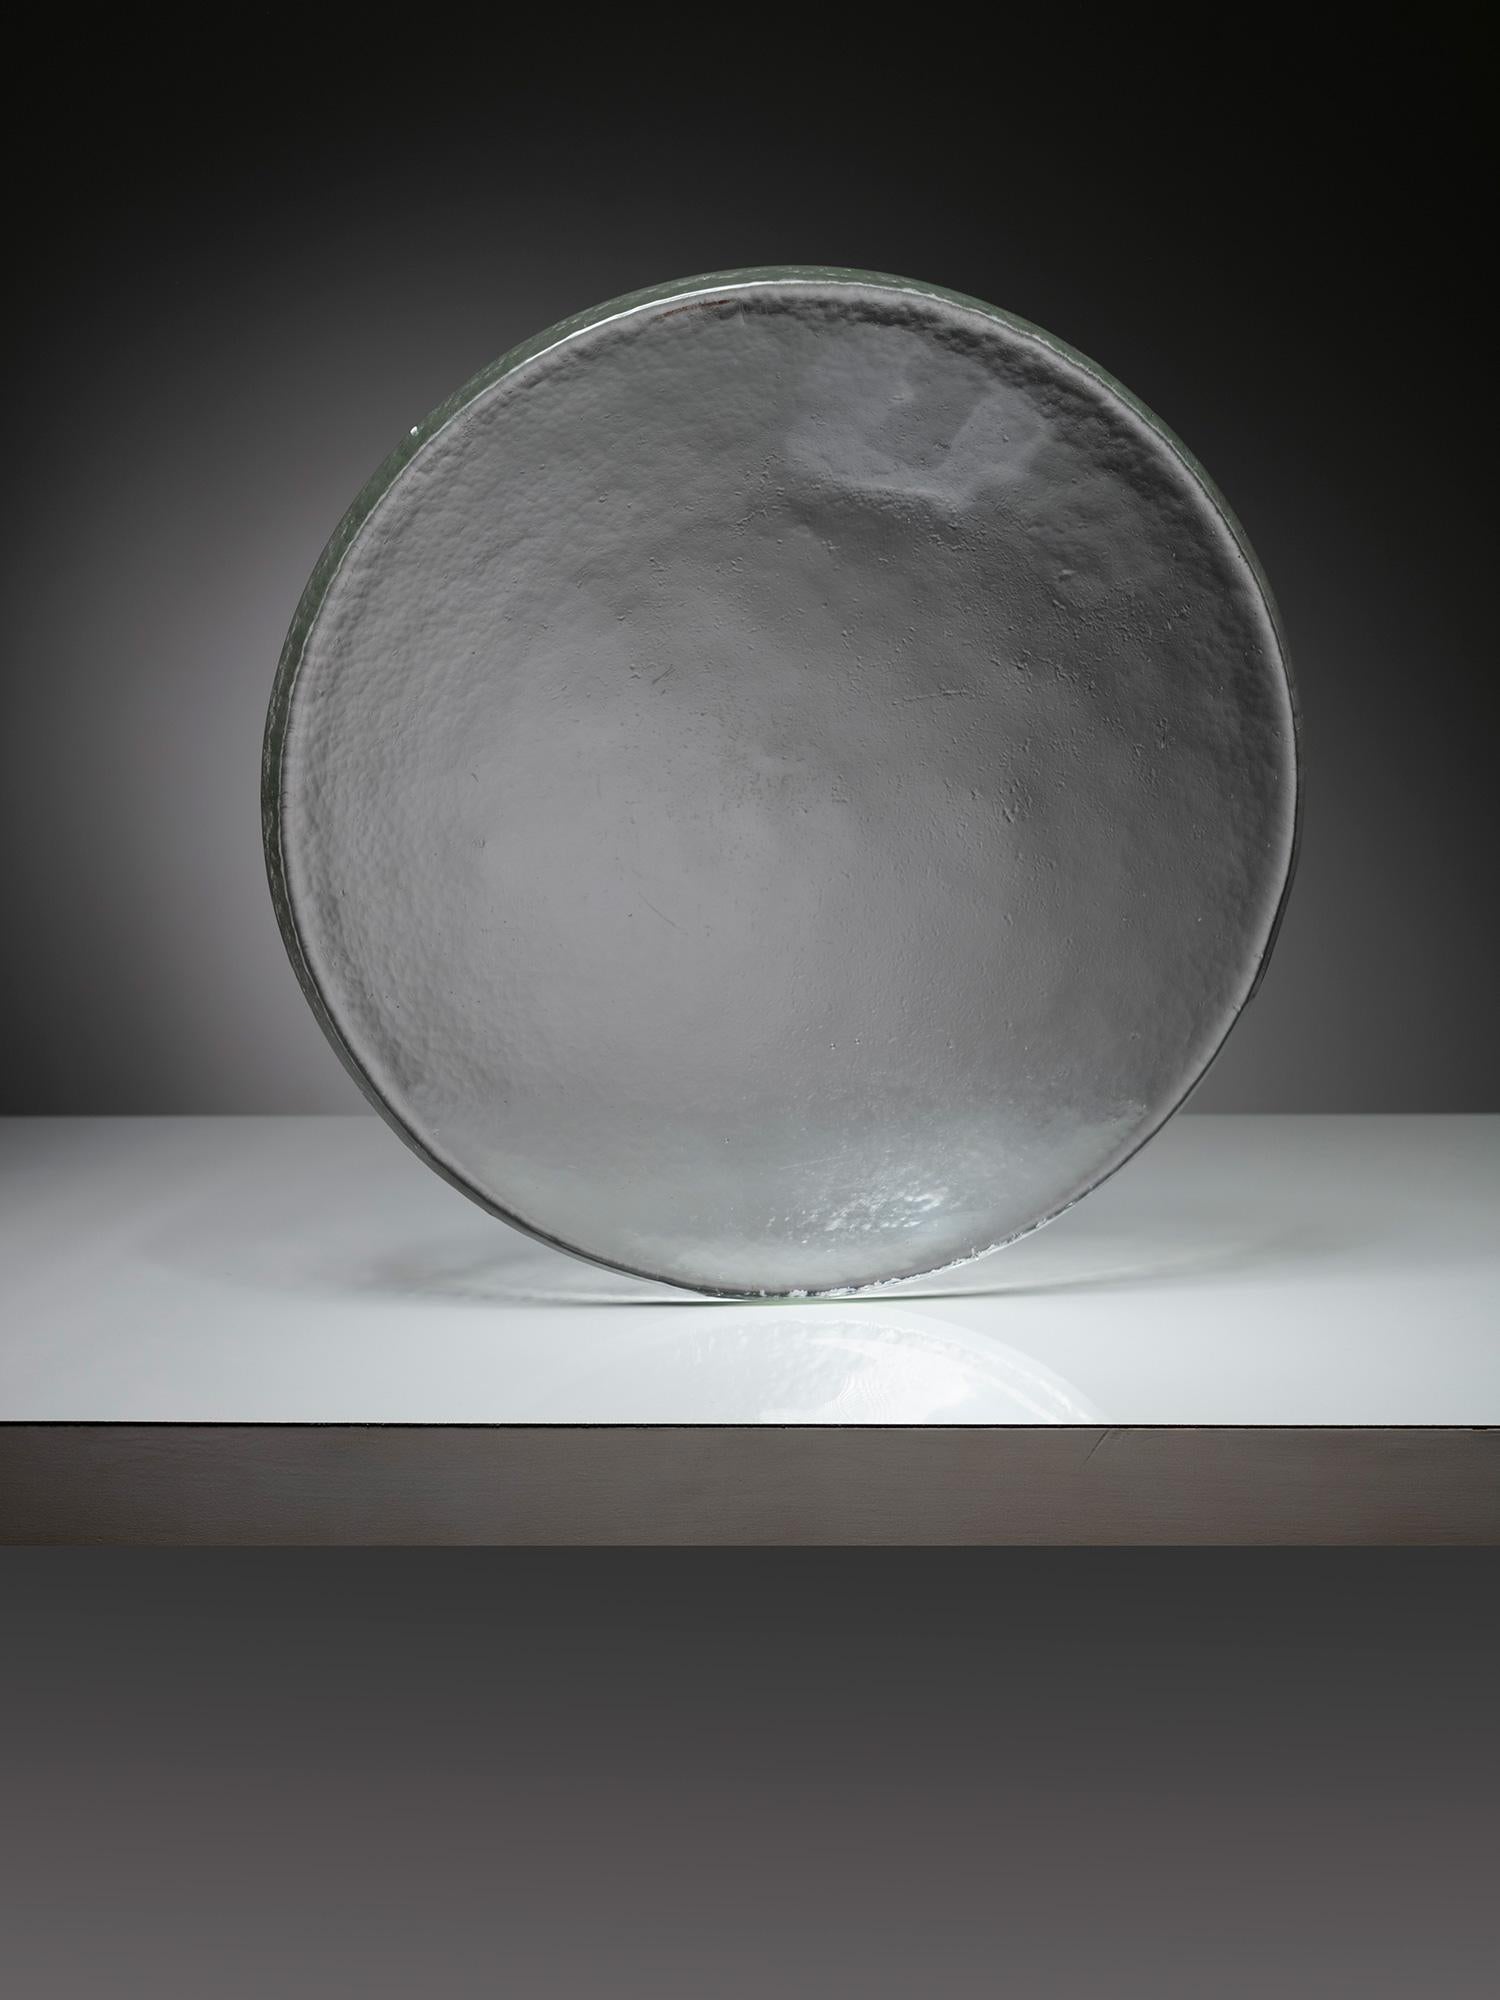 Tafelaufsatz aus Muranoglas von Barbini.
Imposantes, linsenförmiges Stück aus dickem Glas mit gehämmerter Oberfläche